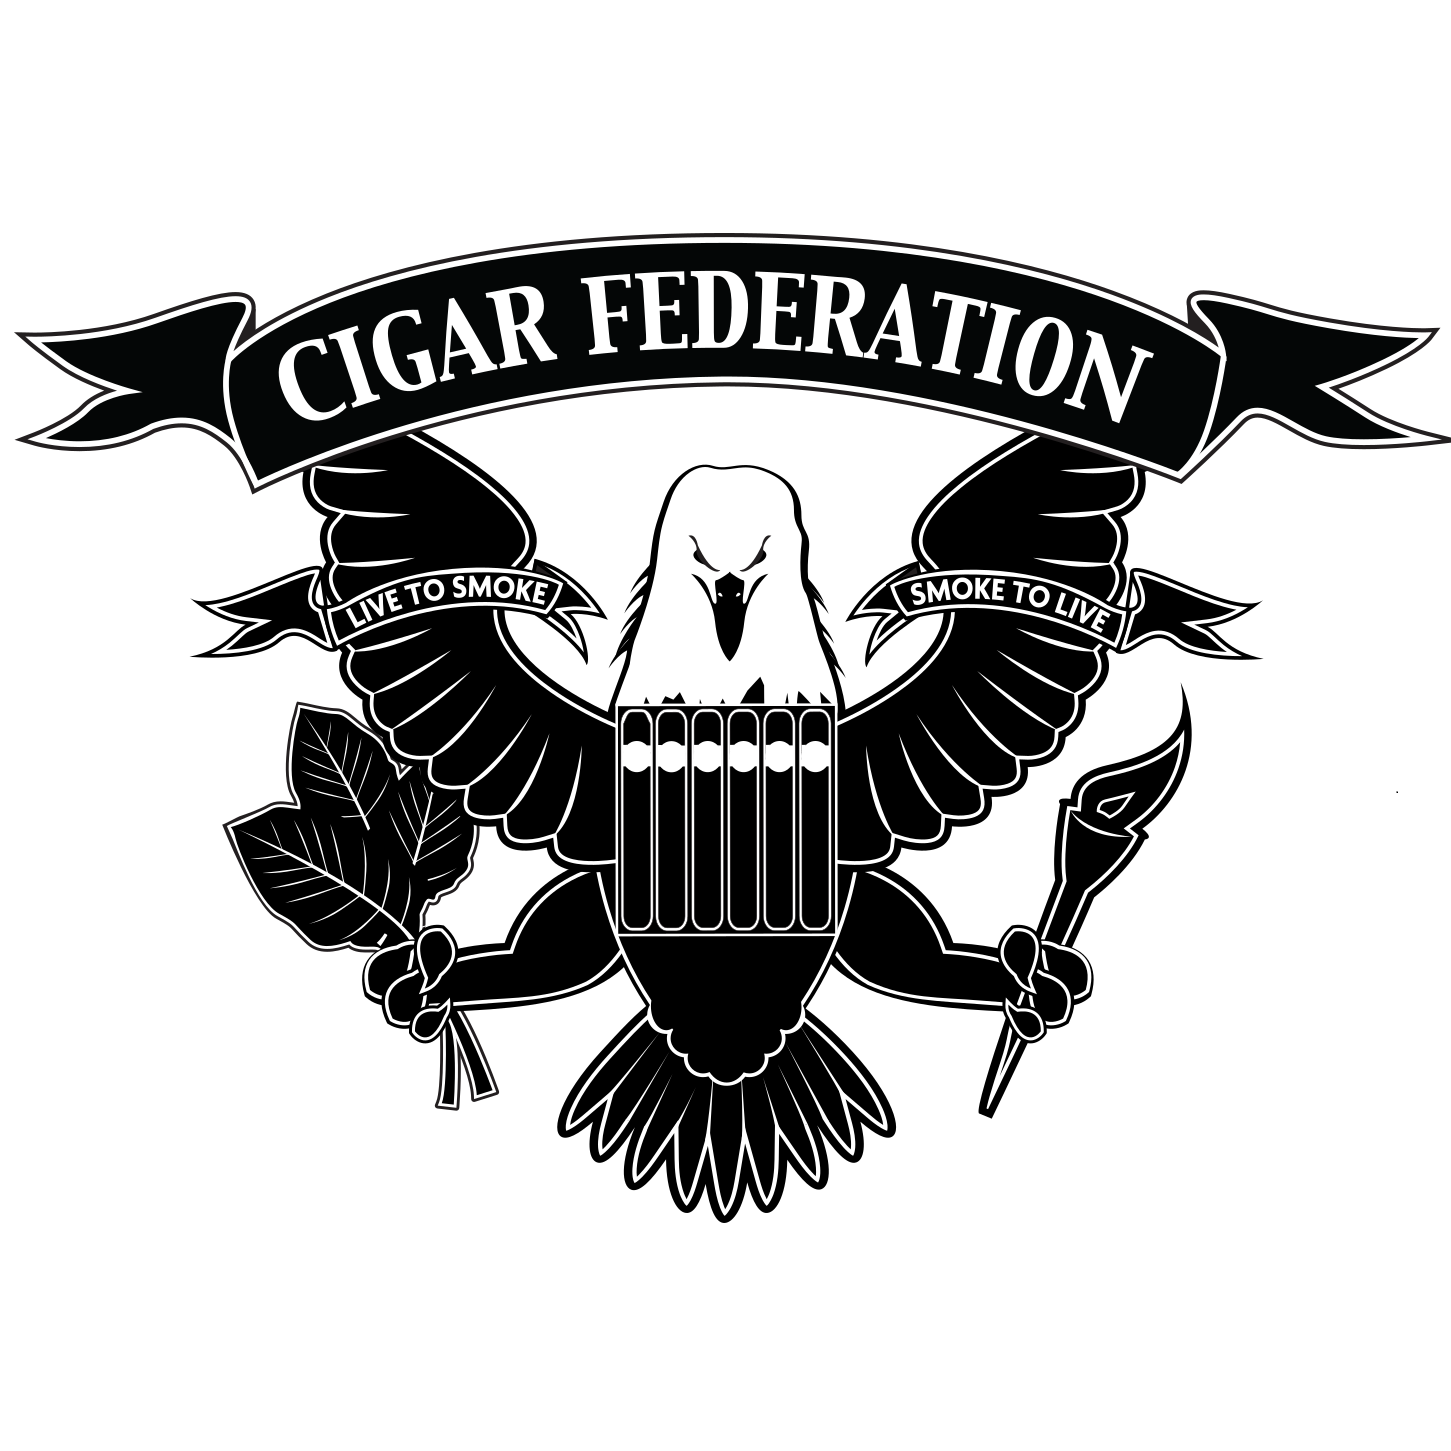 IPCPR 2017 Las Vegas - Torano Cigars with Jack Torano